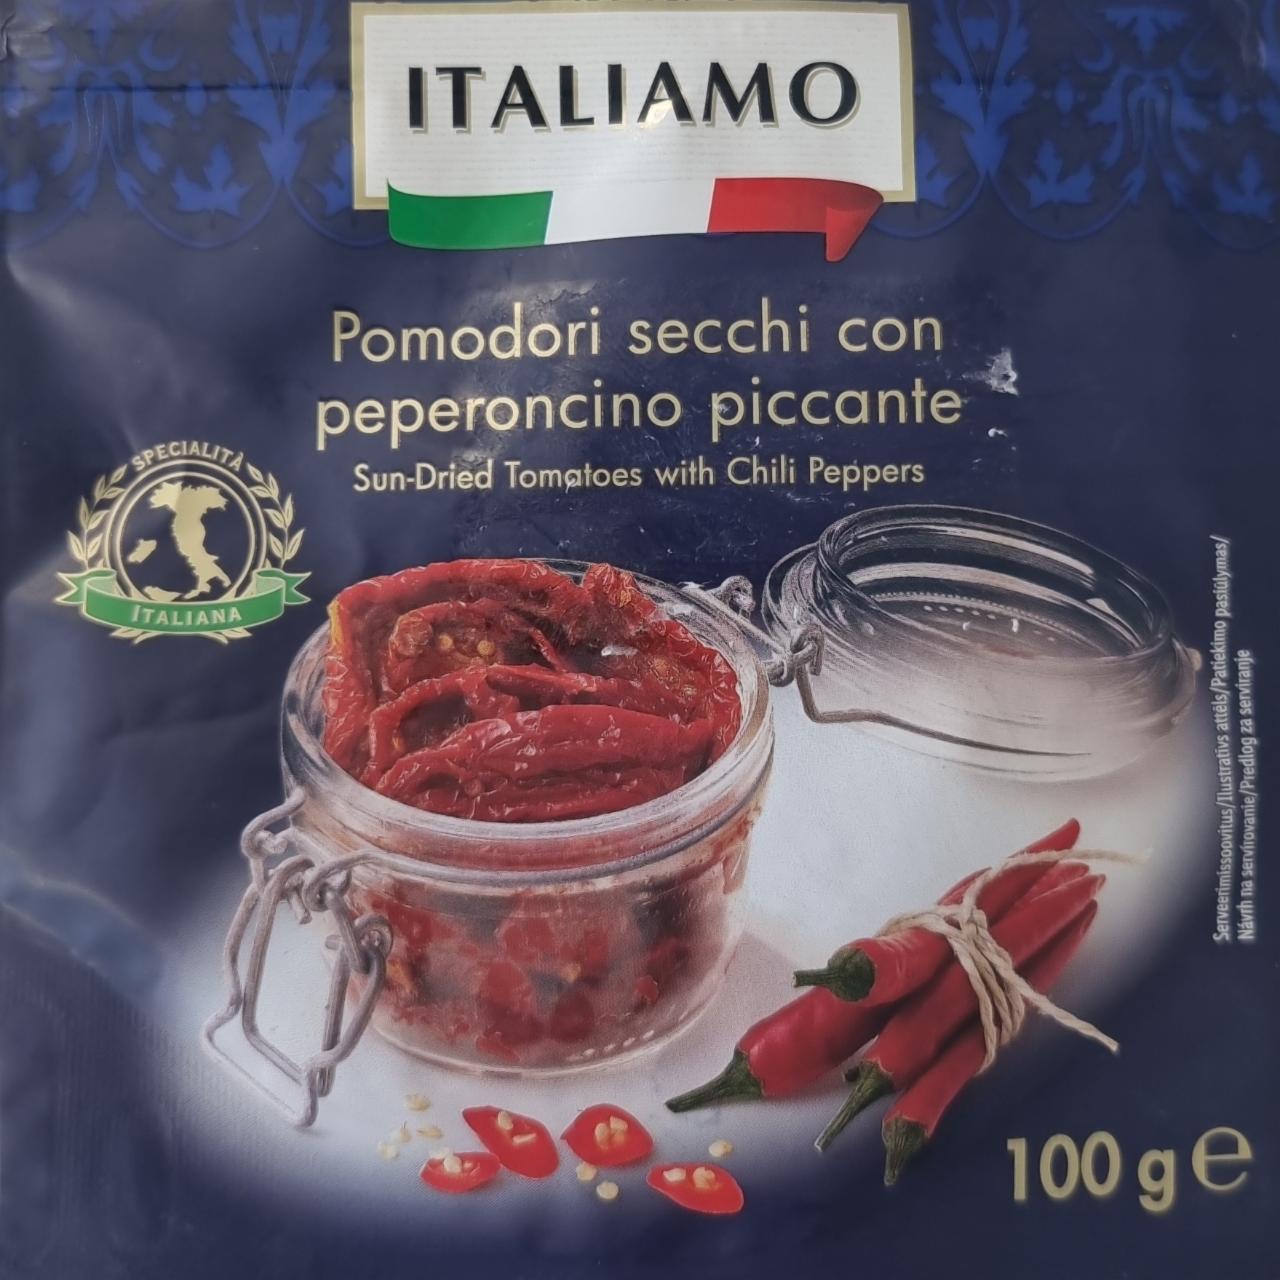 Zdjęcia - Pomodori sechci con peperoncino piccante Italiamo